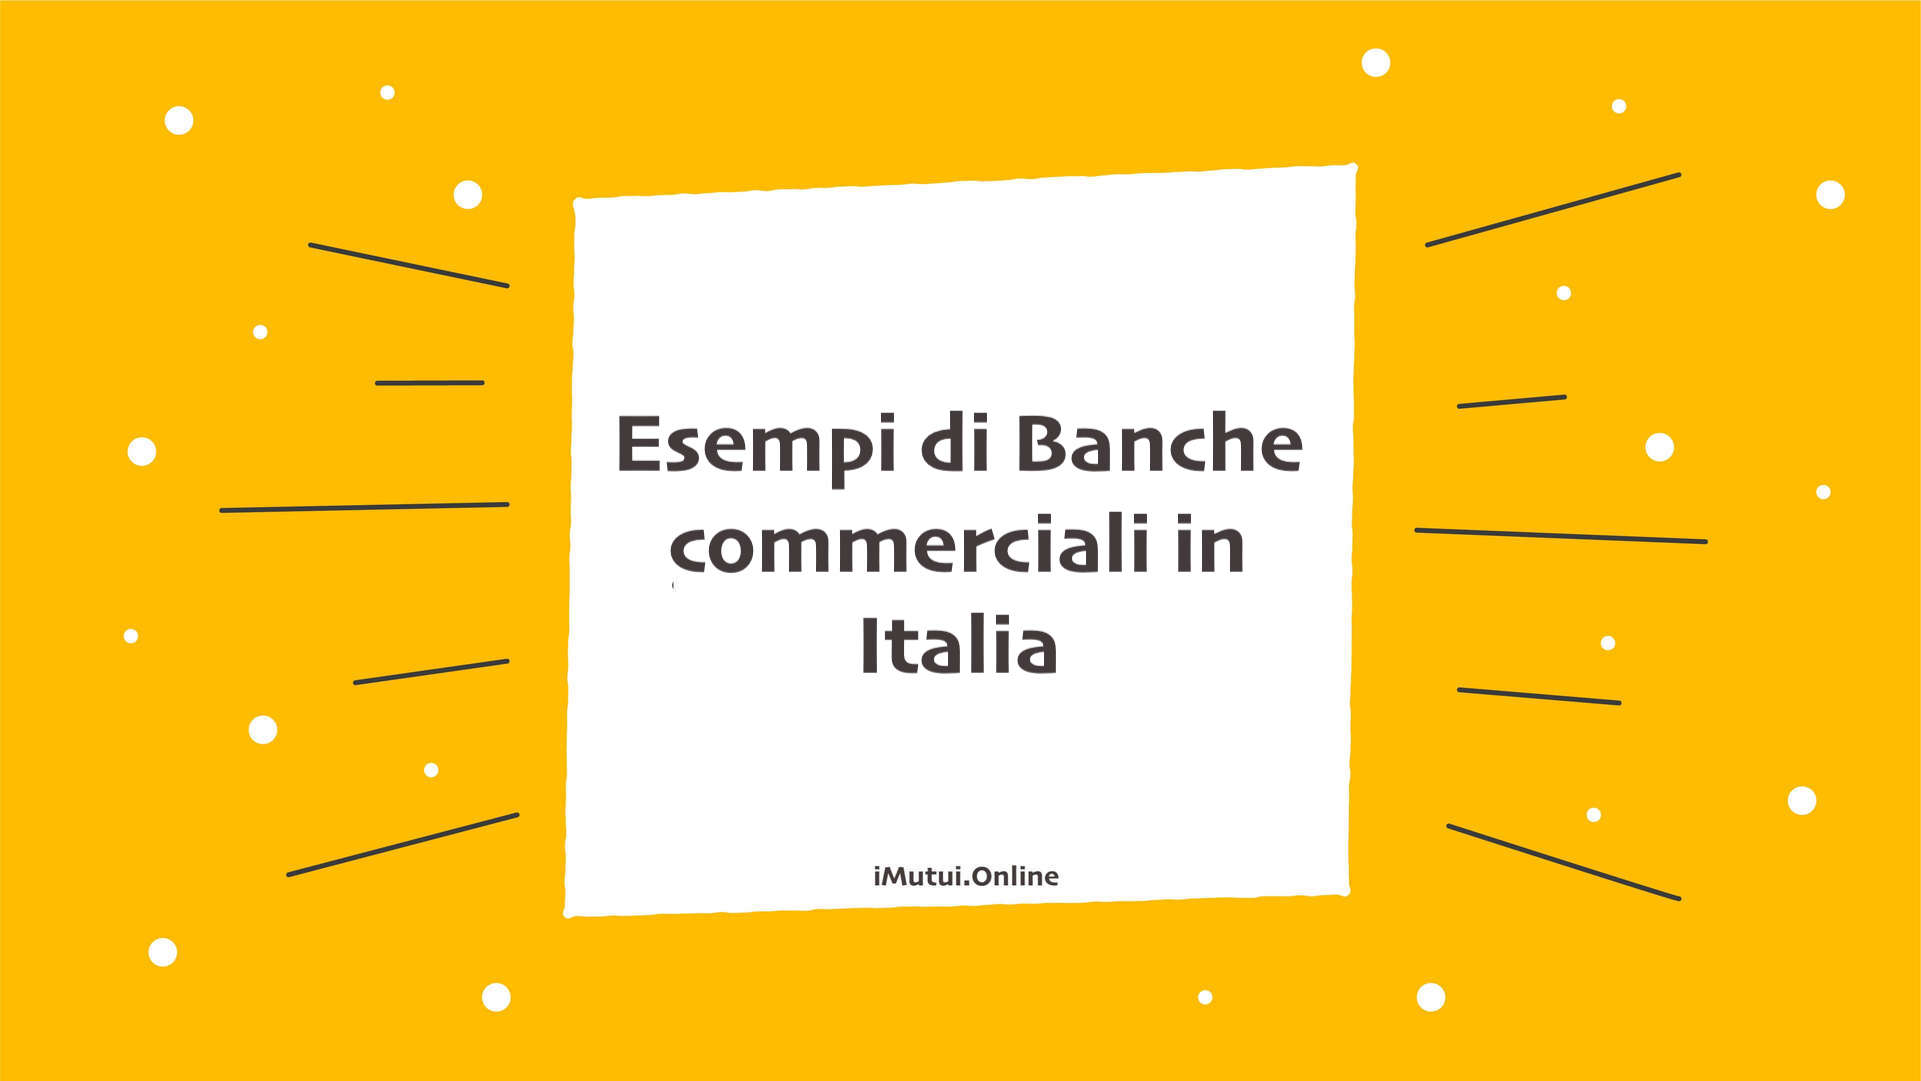 Esempi di Banche commerciali in Italia